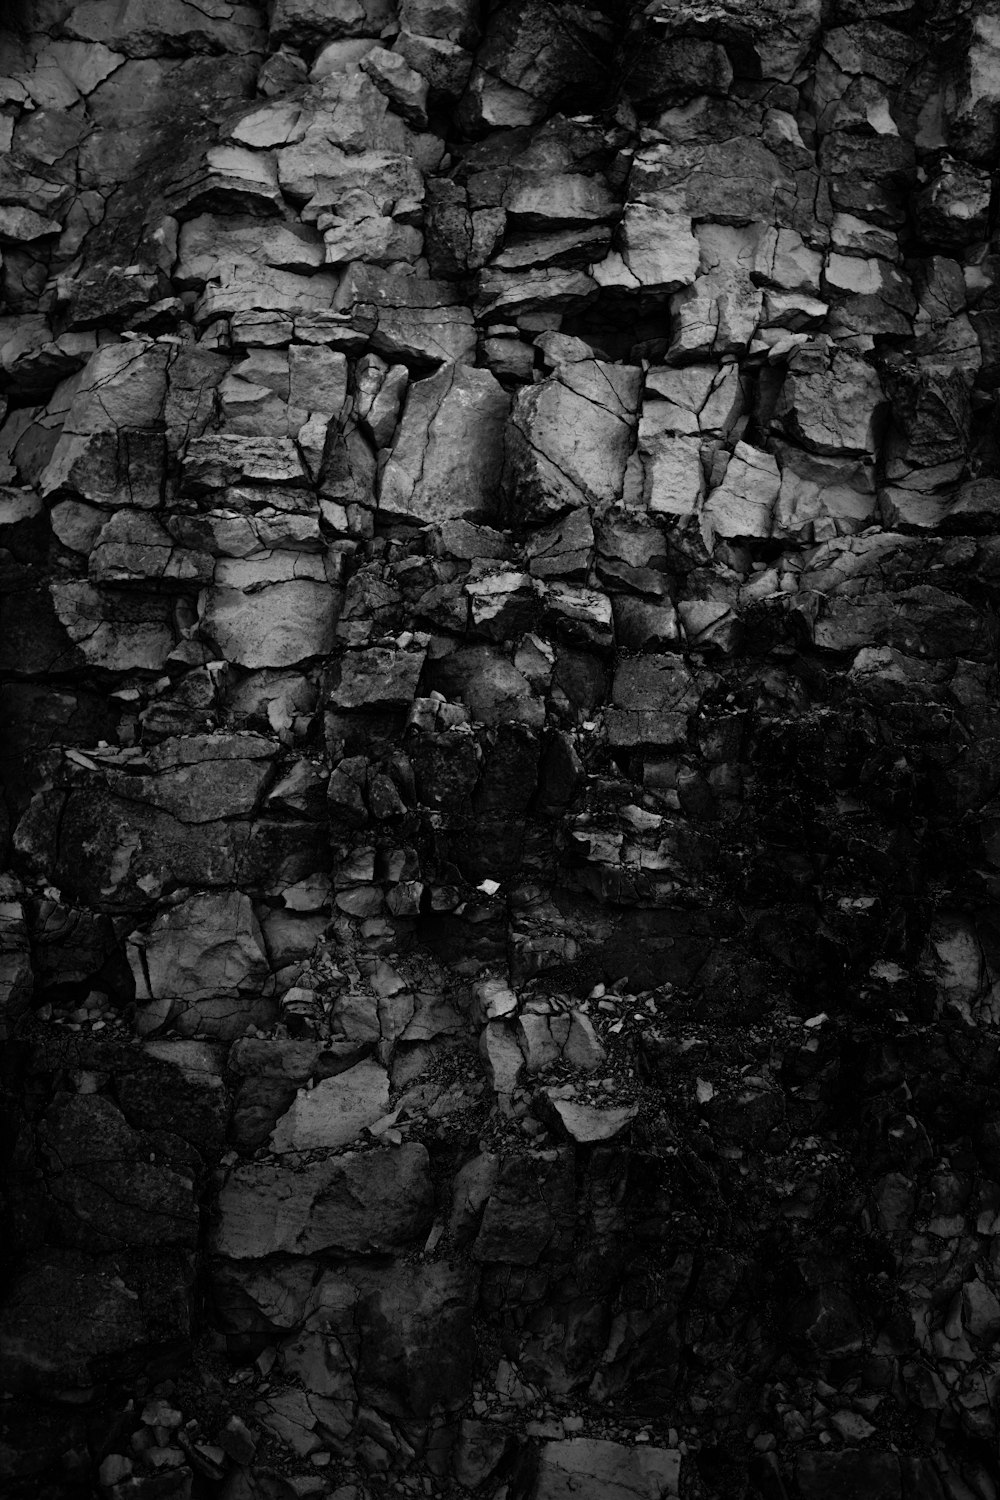 Fotografía en escala de grises de rocas